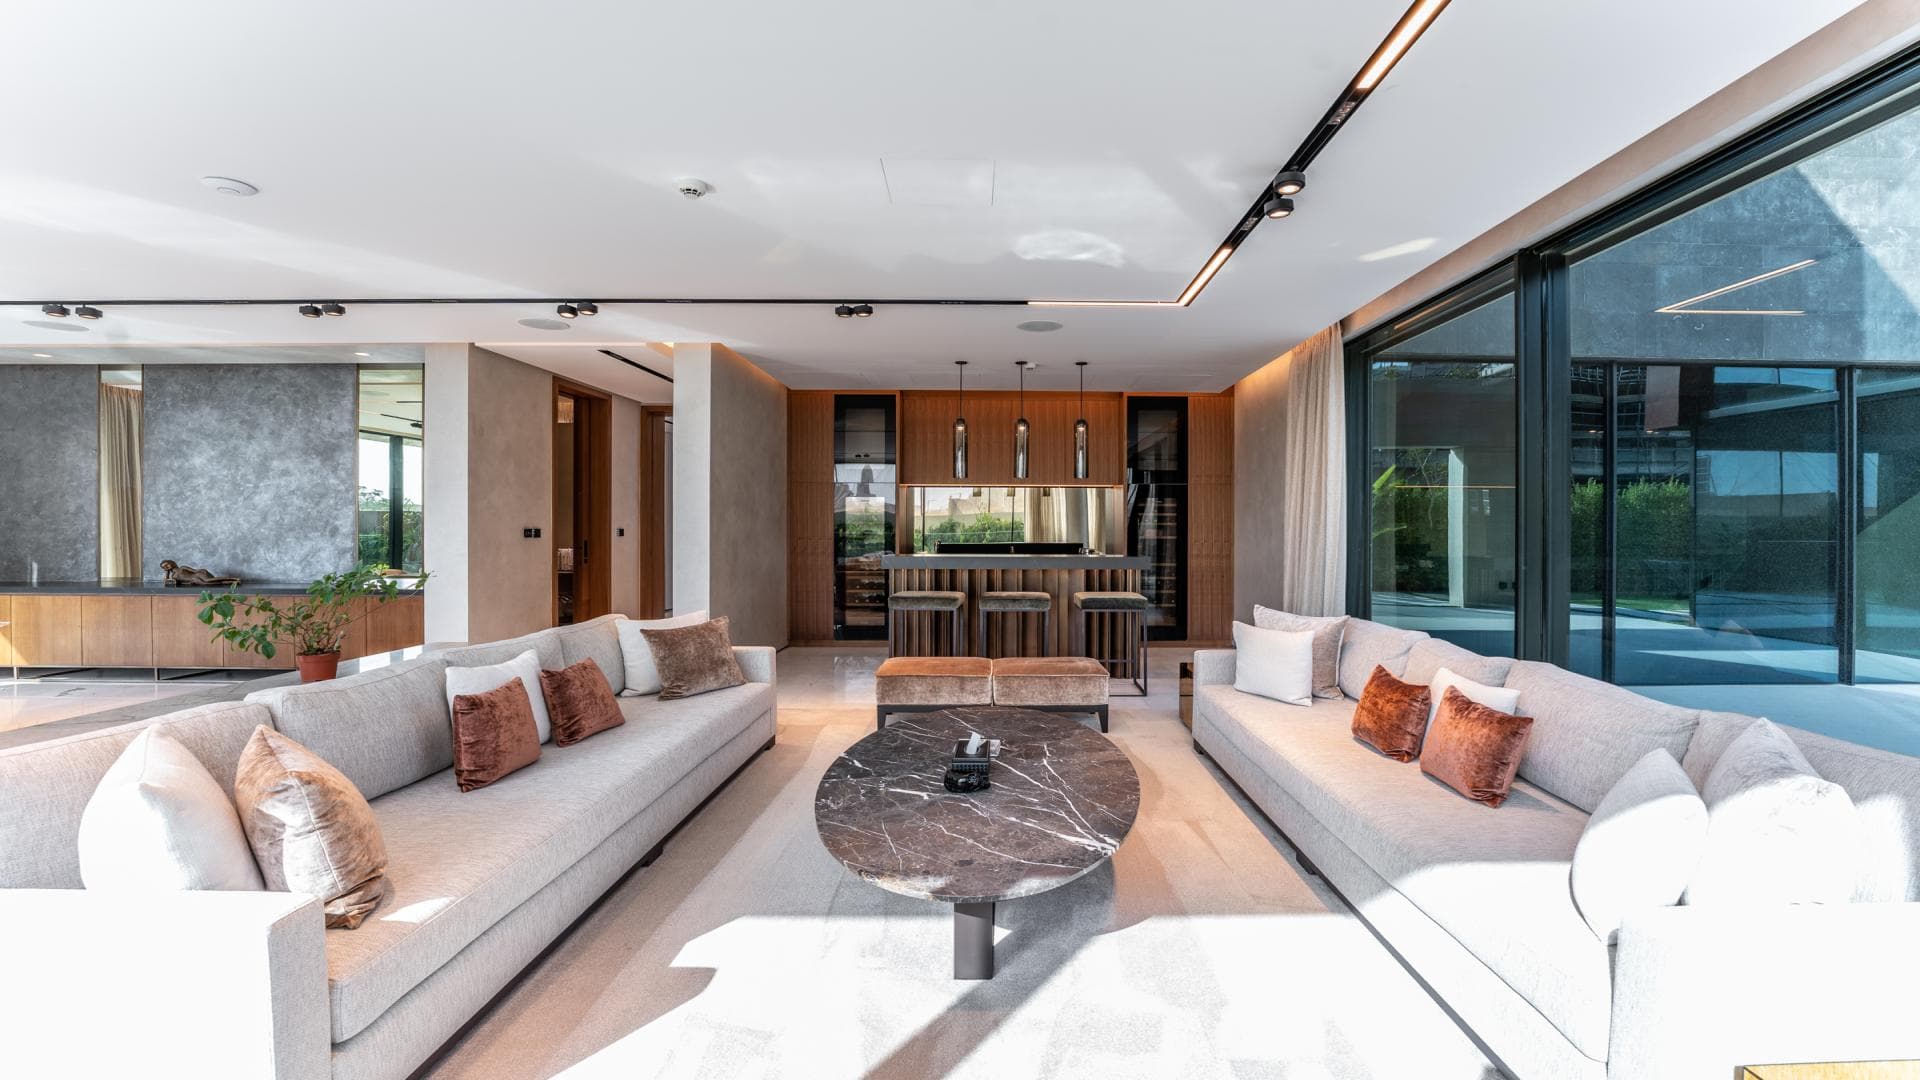 5 Bedroom Villa For Sale Dubai Hills Lp17449 2314bfa9f325a800.jpg